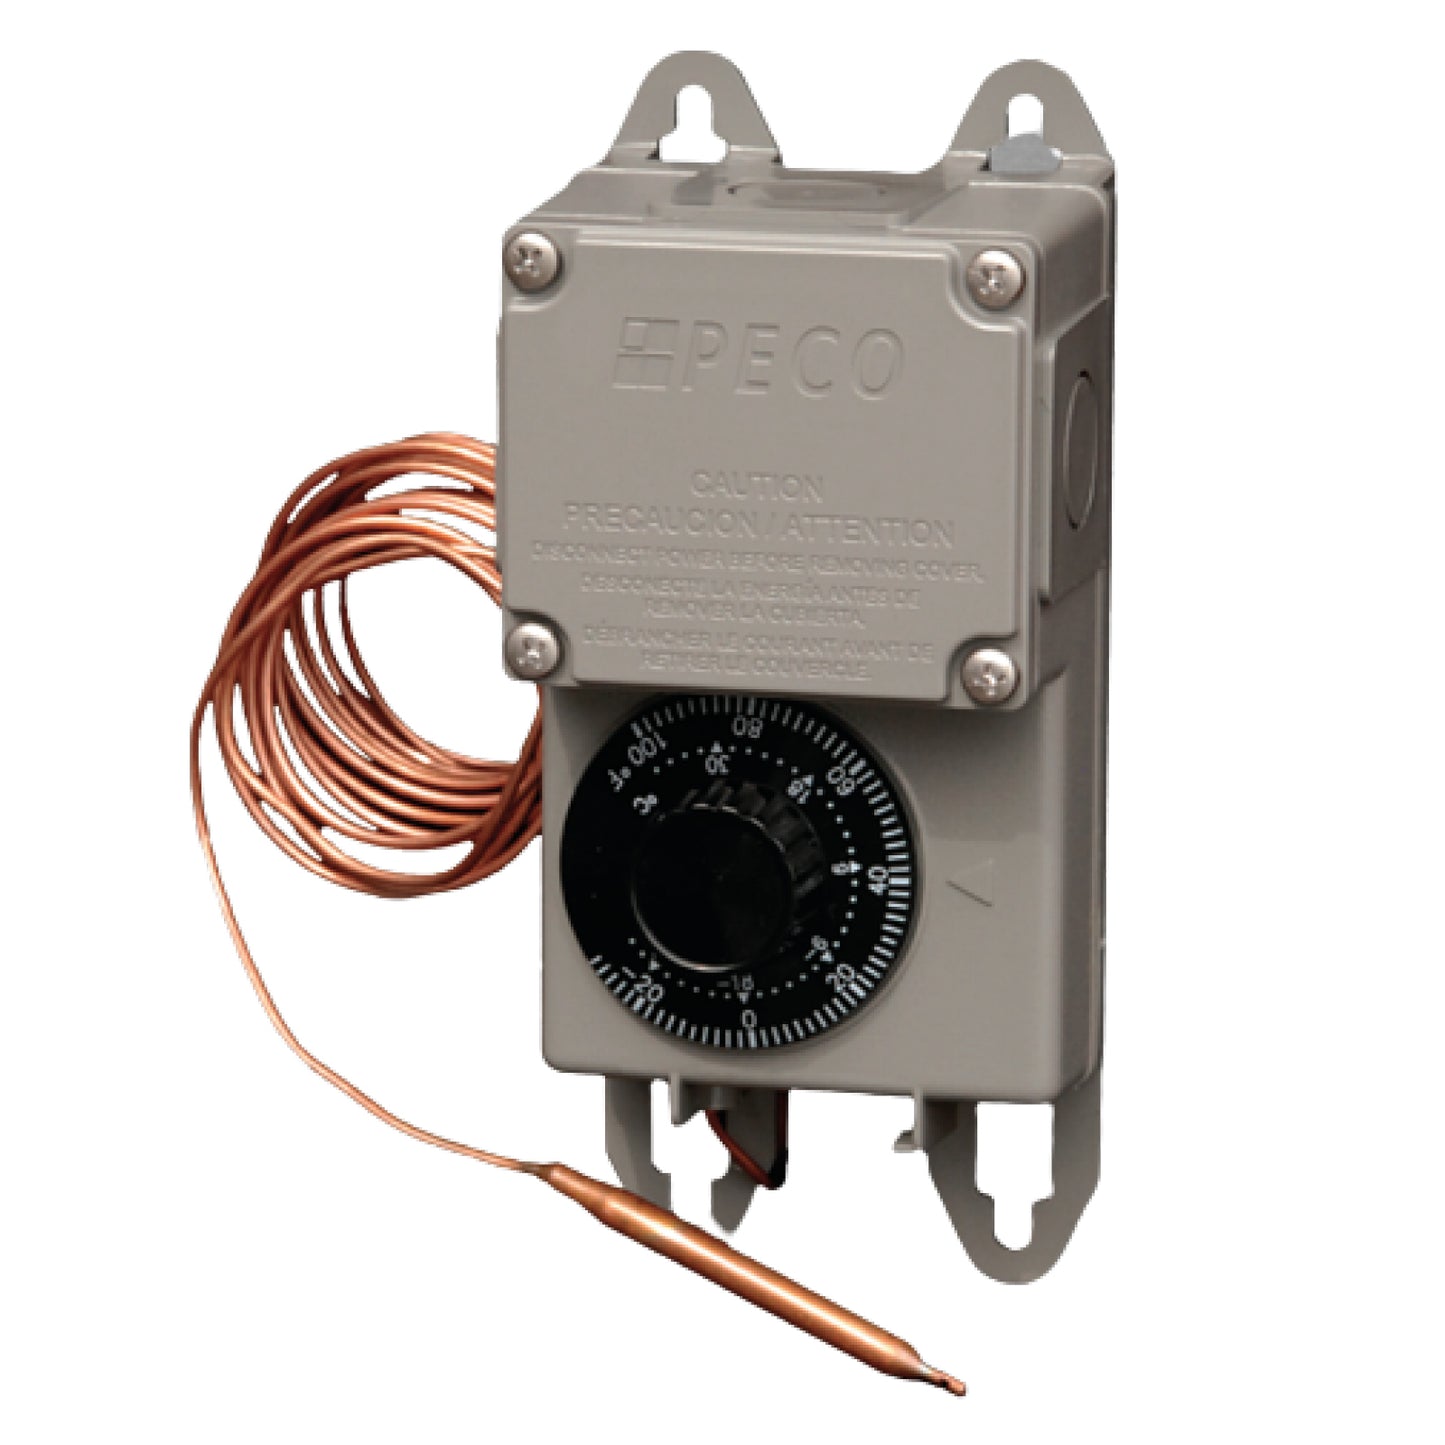 TRF115-007 Thermostat extérieur en cuivre pour béton (8 pieds) 